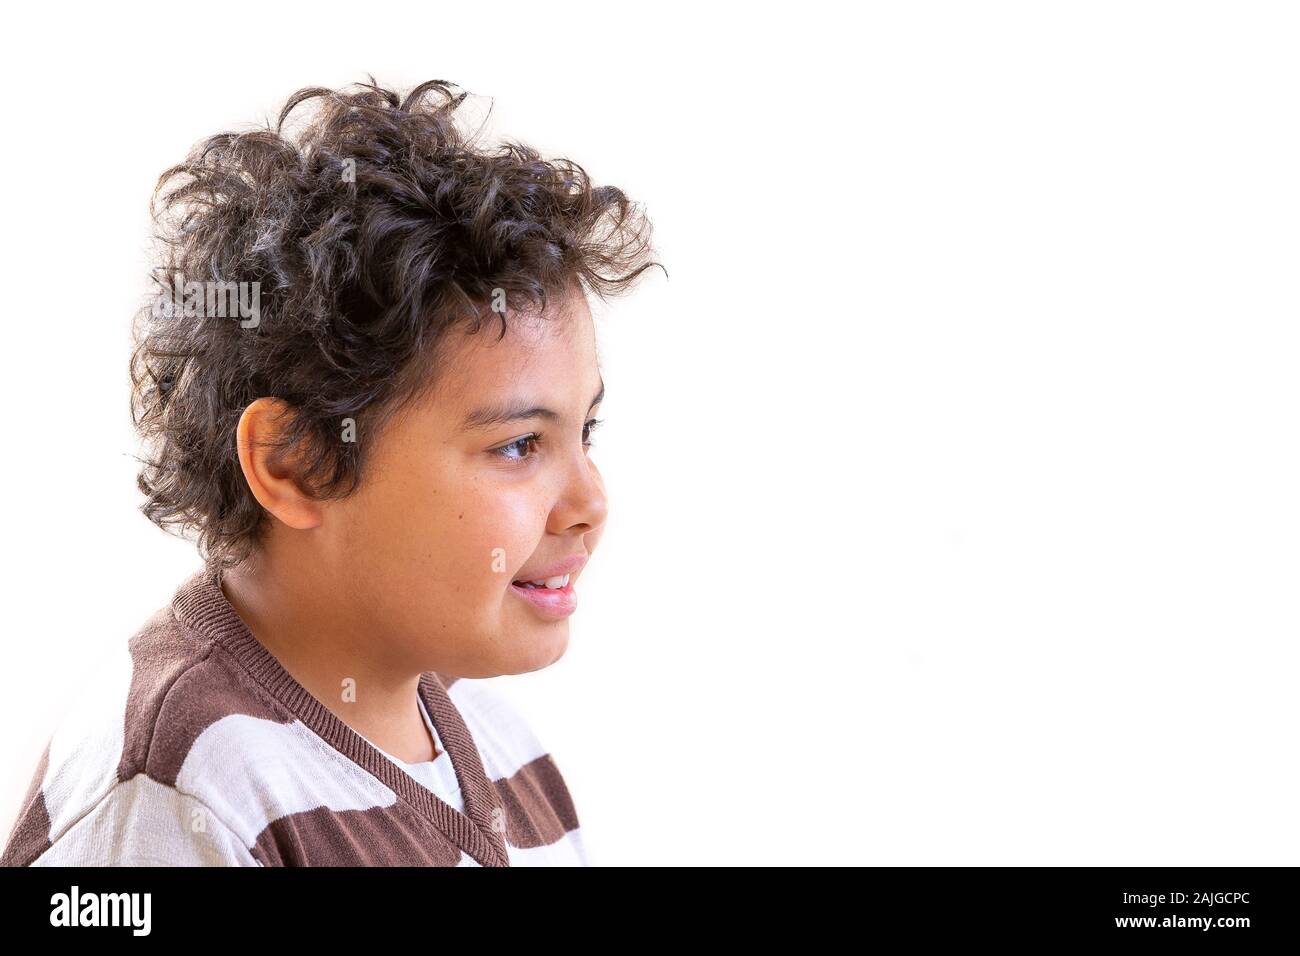 Konzept einer glücklichen Kindheit, lächelnde junge Teenager close-up Profil anzeigen Stockfoto